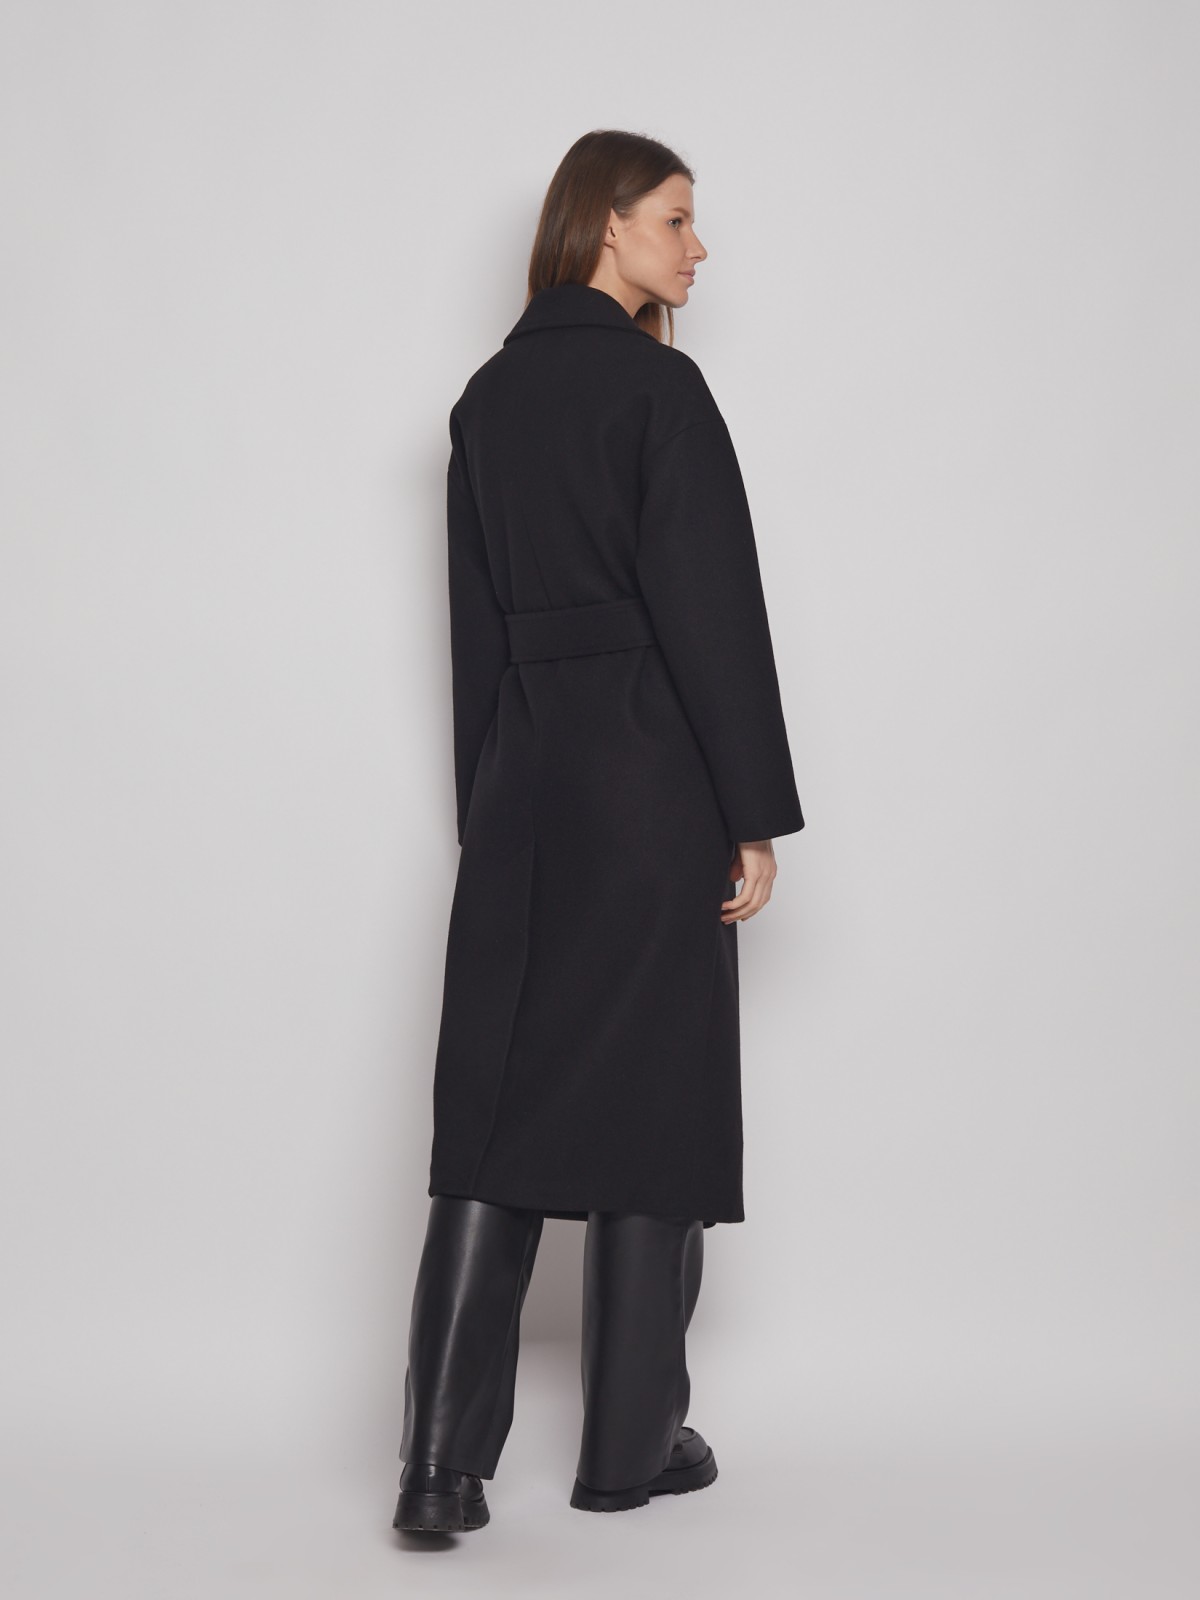 Двубортное пальто с поясом zolla 023125857054, цвет черный, размер XS - фото 5